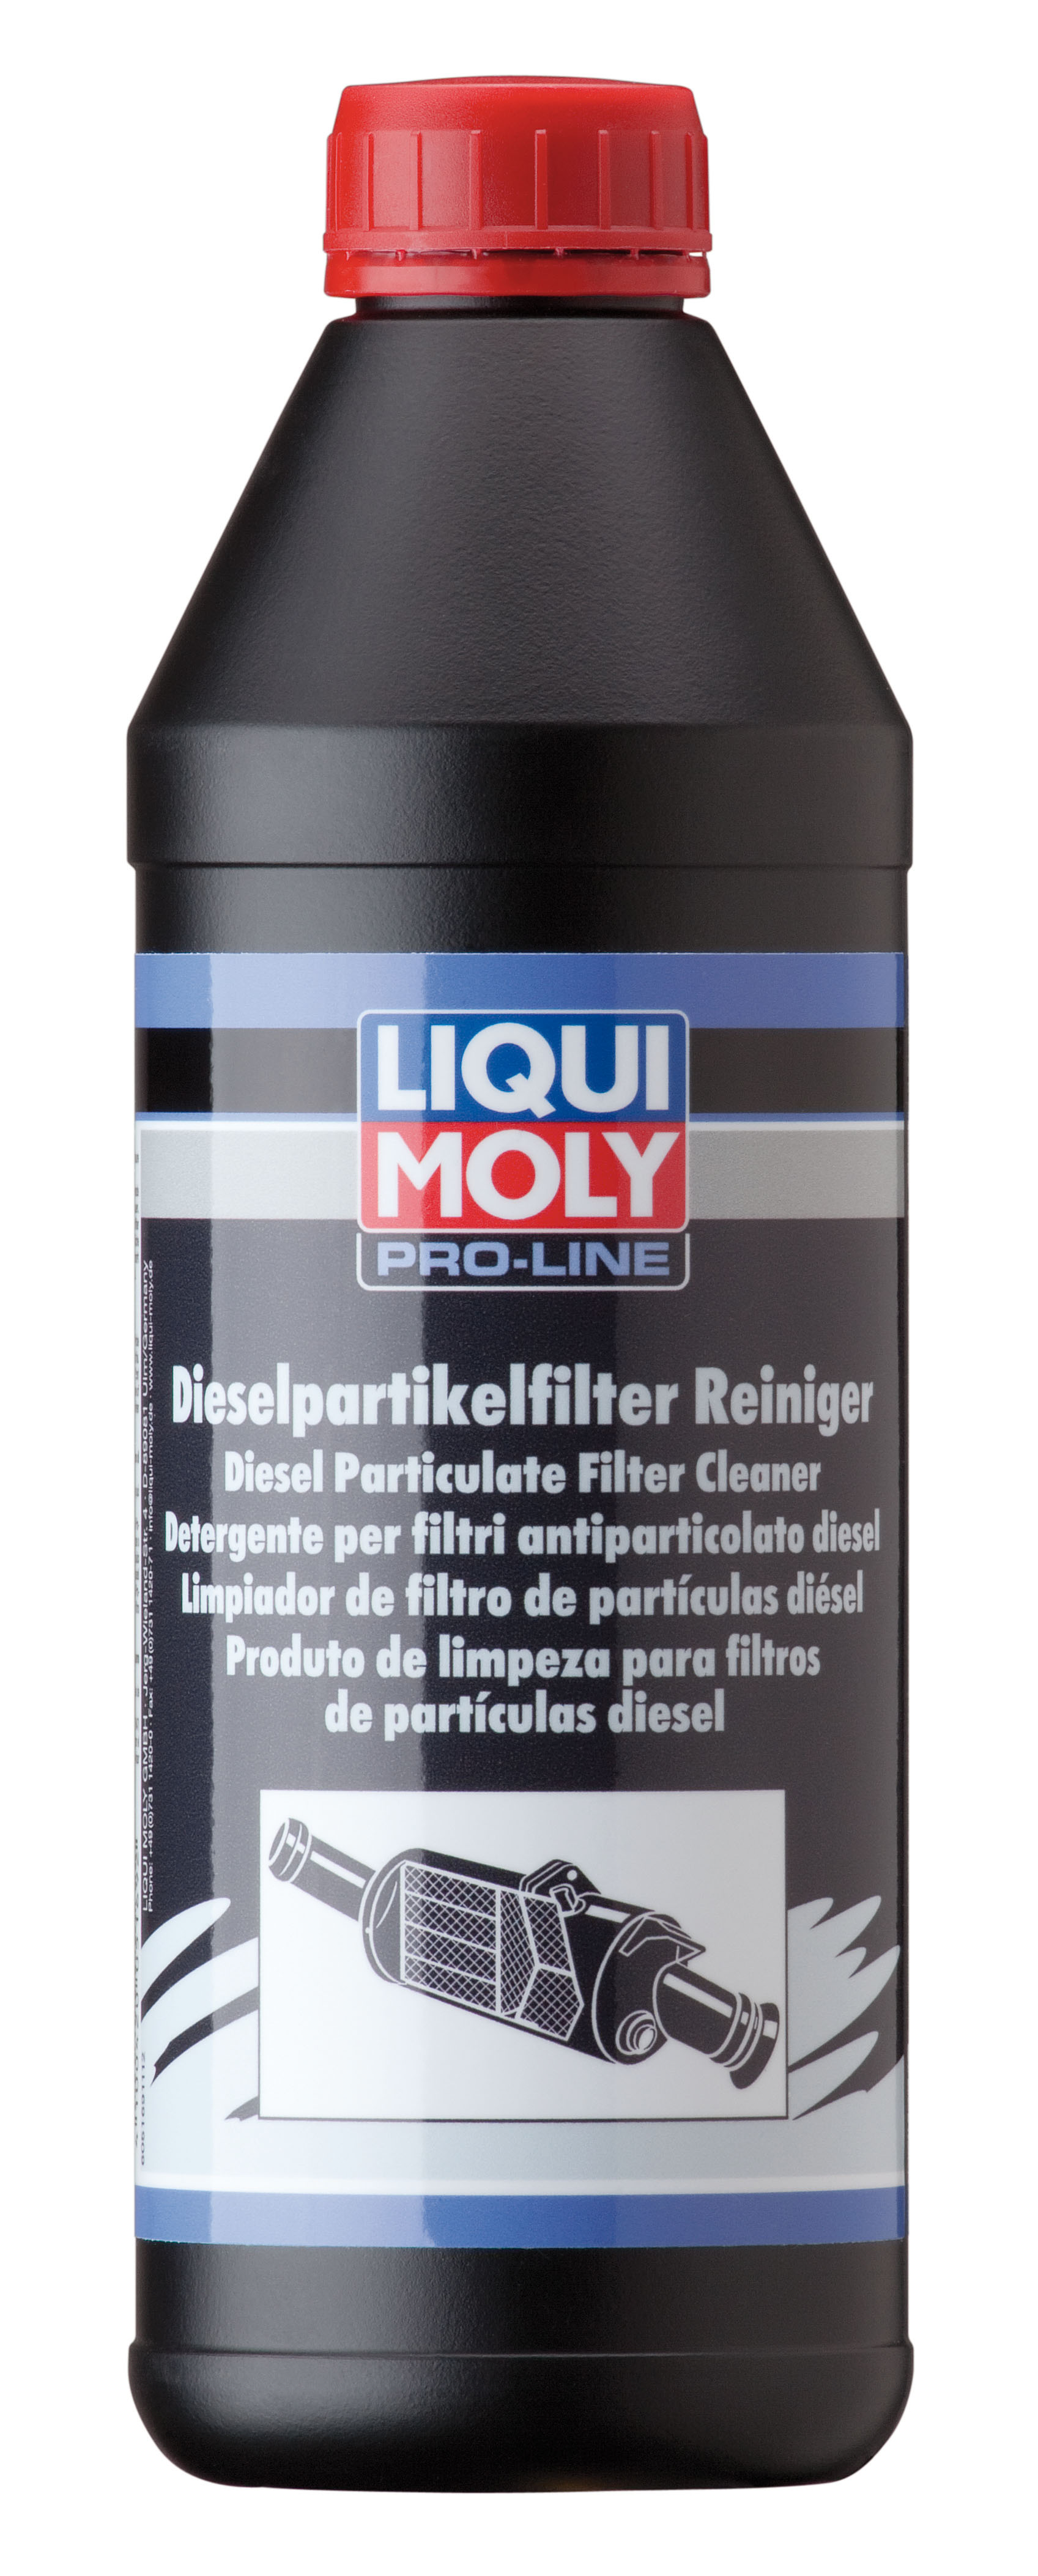 Профессиональный очиститель дизельного сажевого фильтра Liqui Moly Pro-Line Diesel Partikelfilter Reiniger